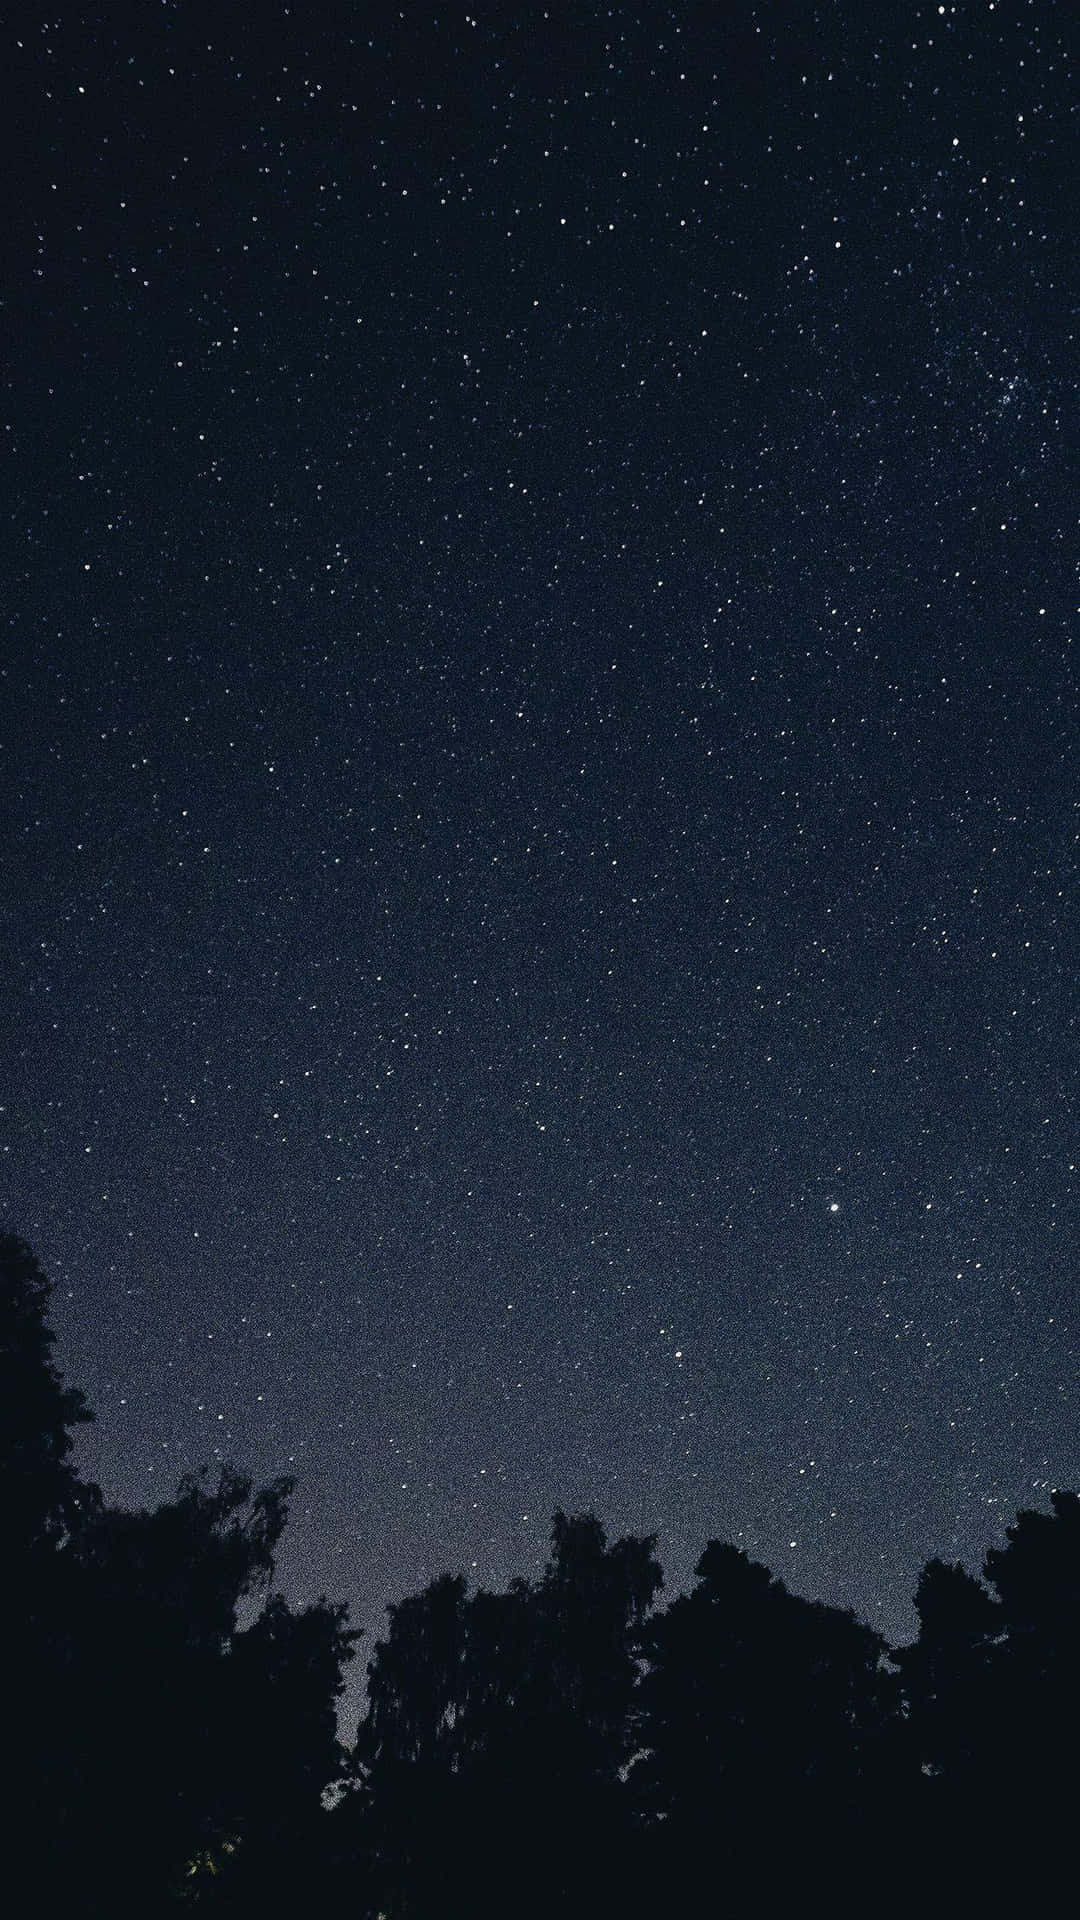 Umcéu Noturno Estrelado E Escuro, Com Estrelas Iluminadas No Céu Noturno. Papel de Parede